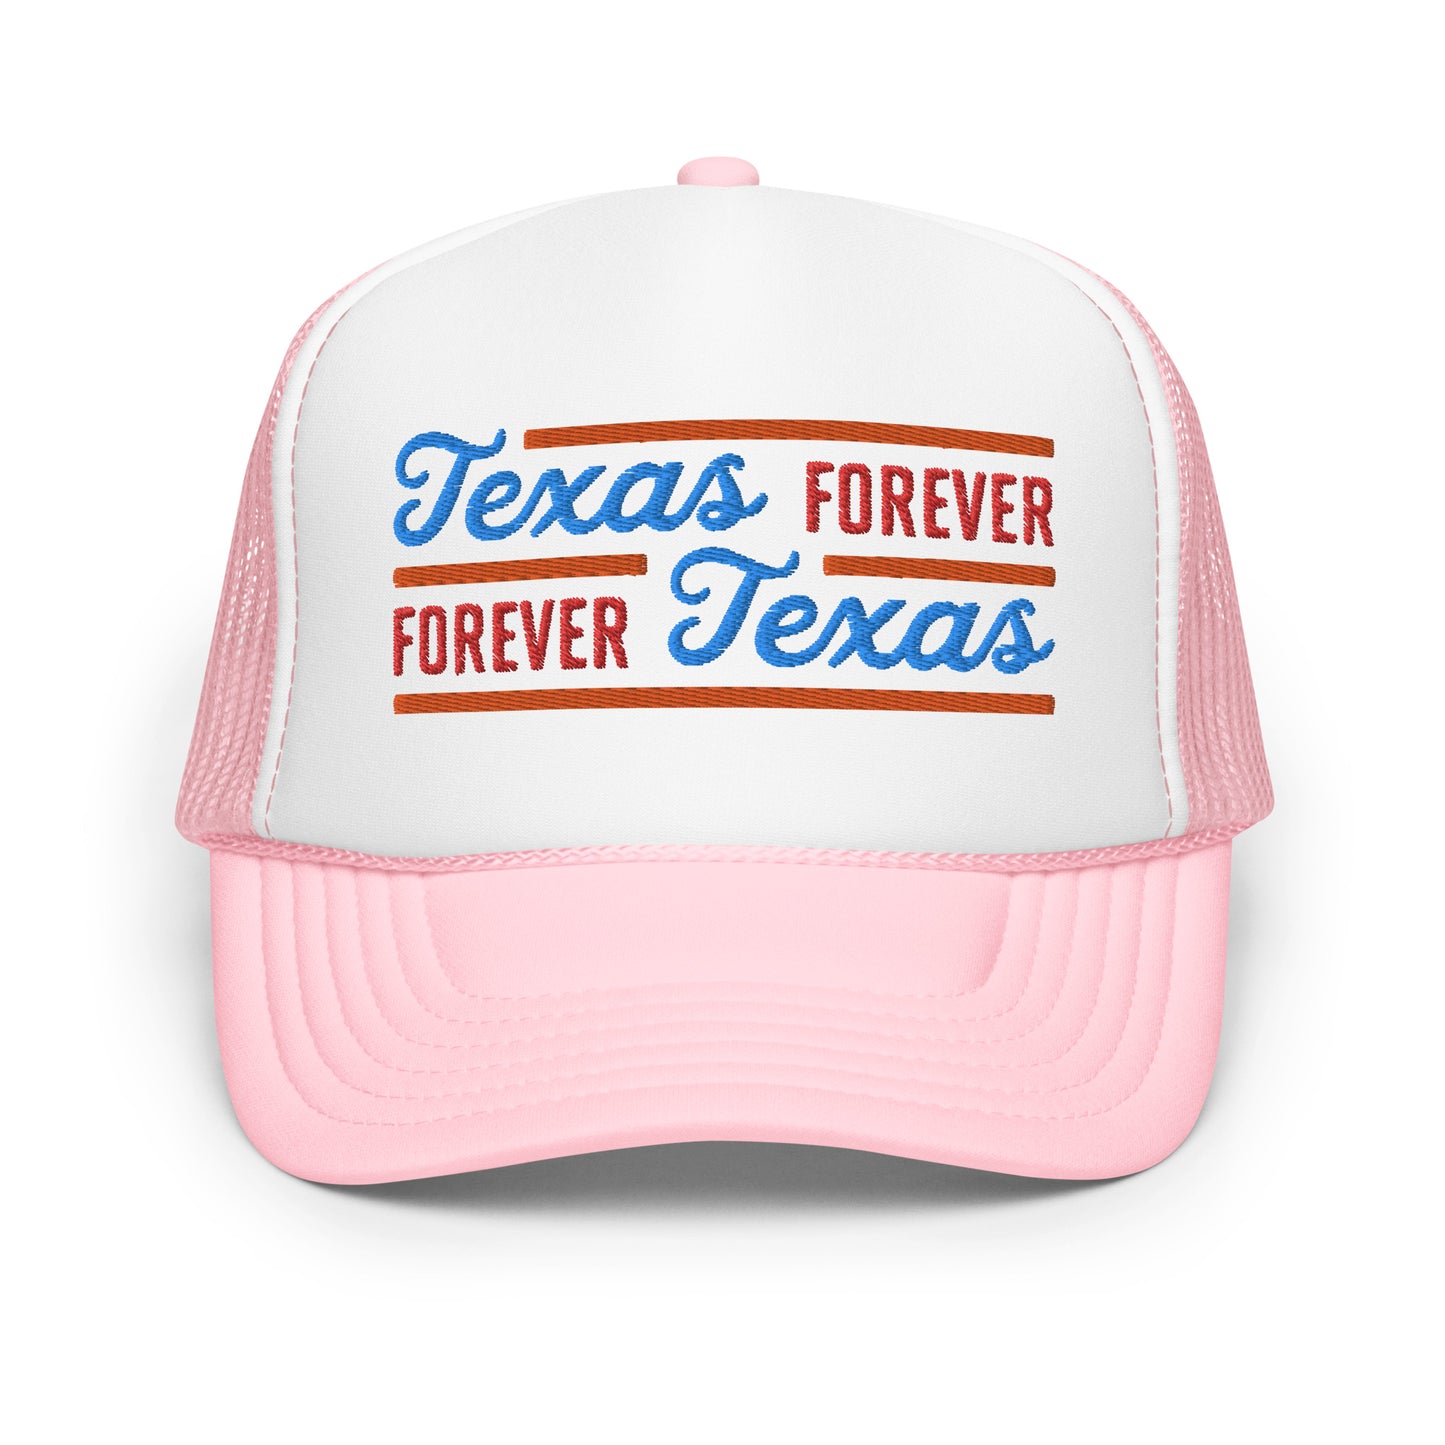 Texas Forever Fancy Foam Trucker Hat